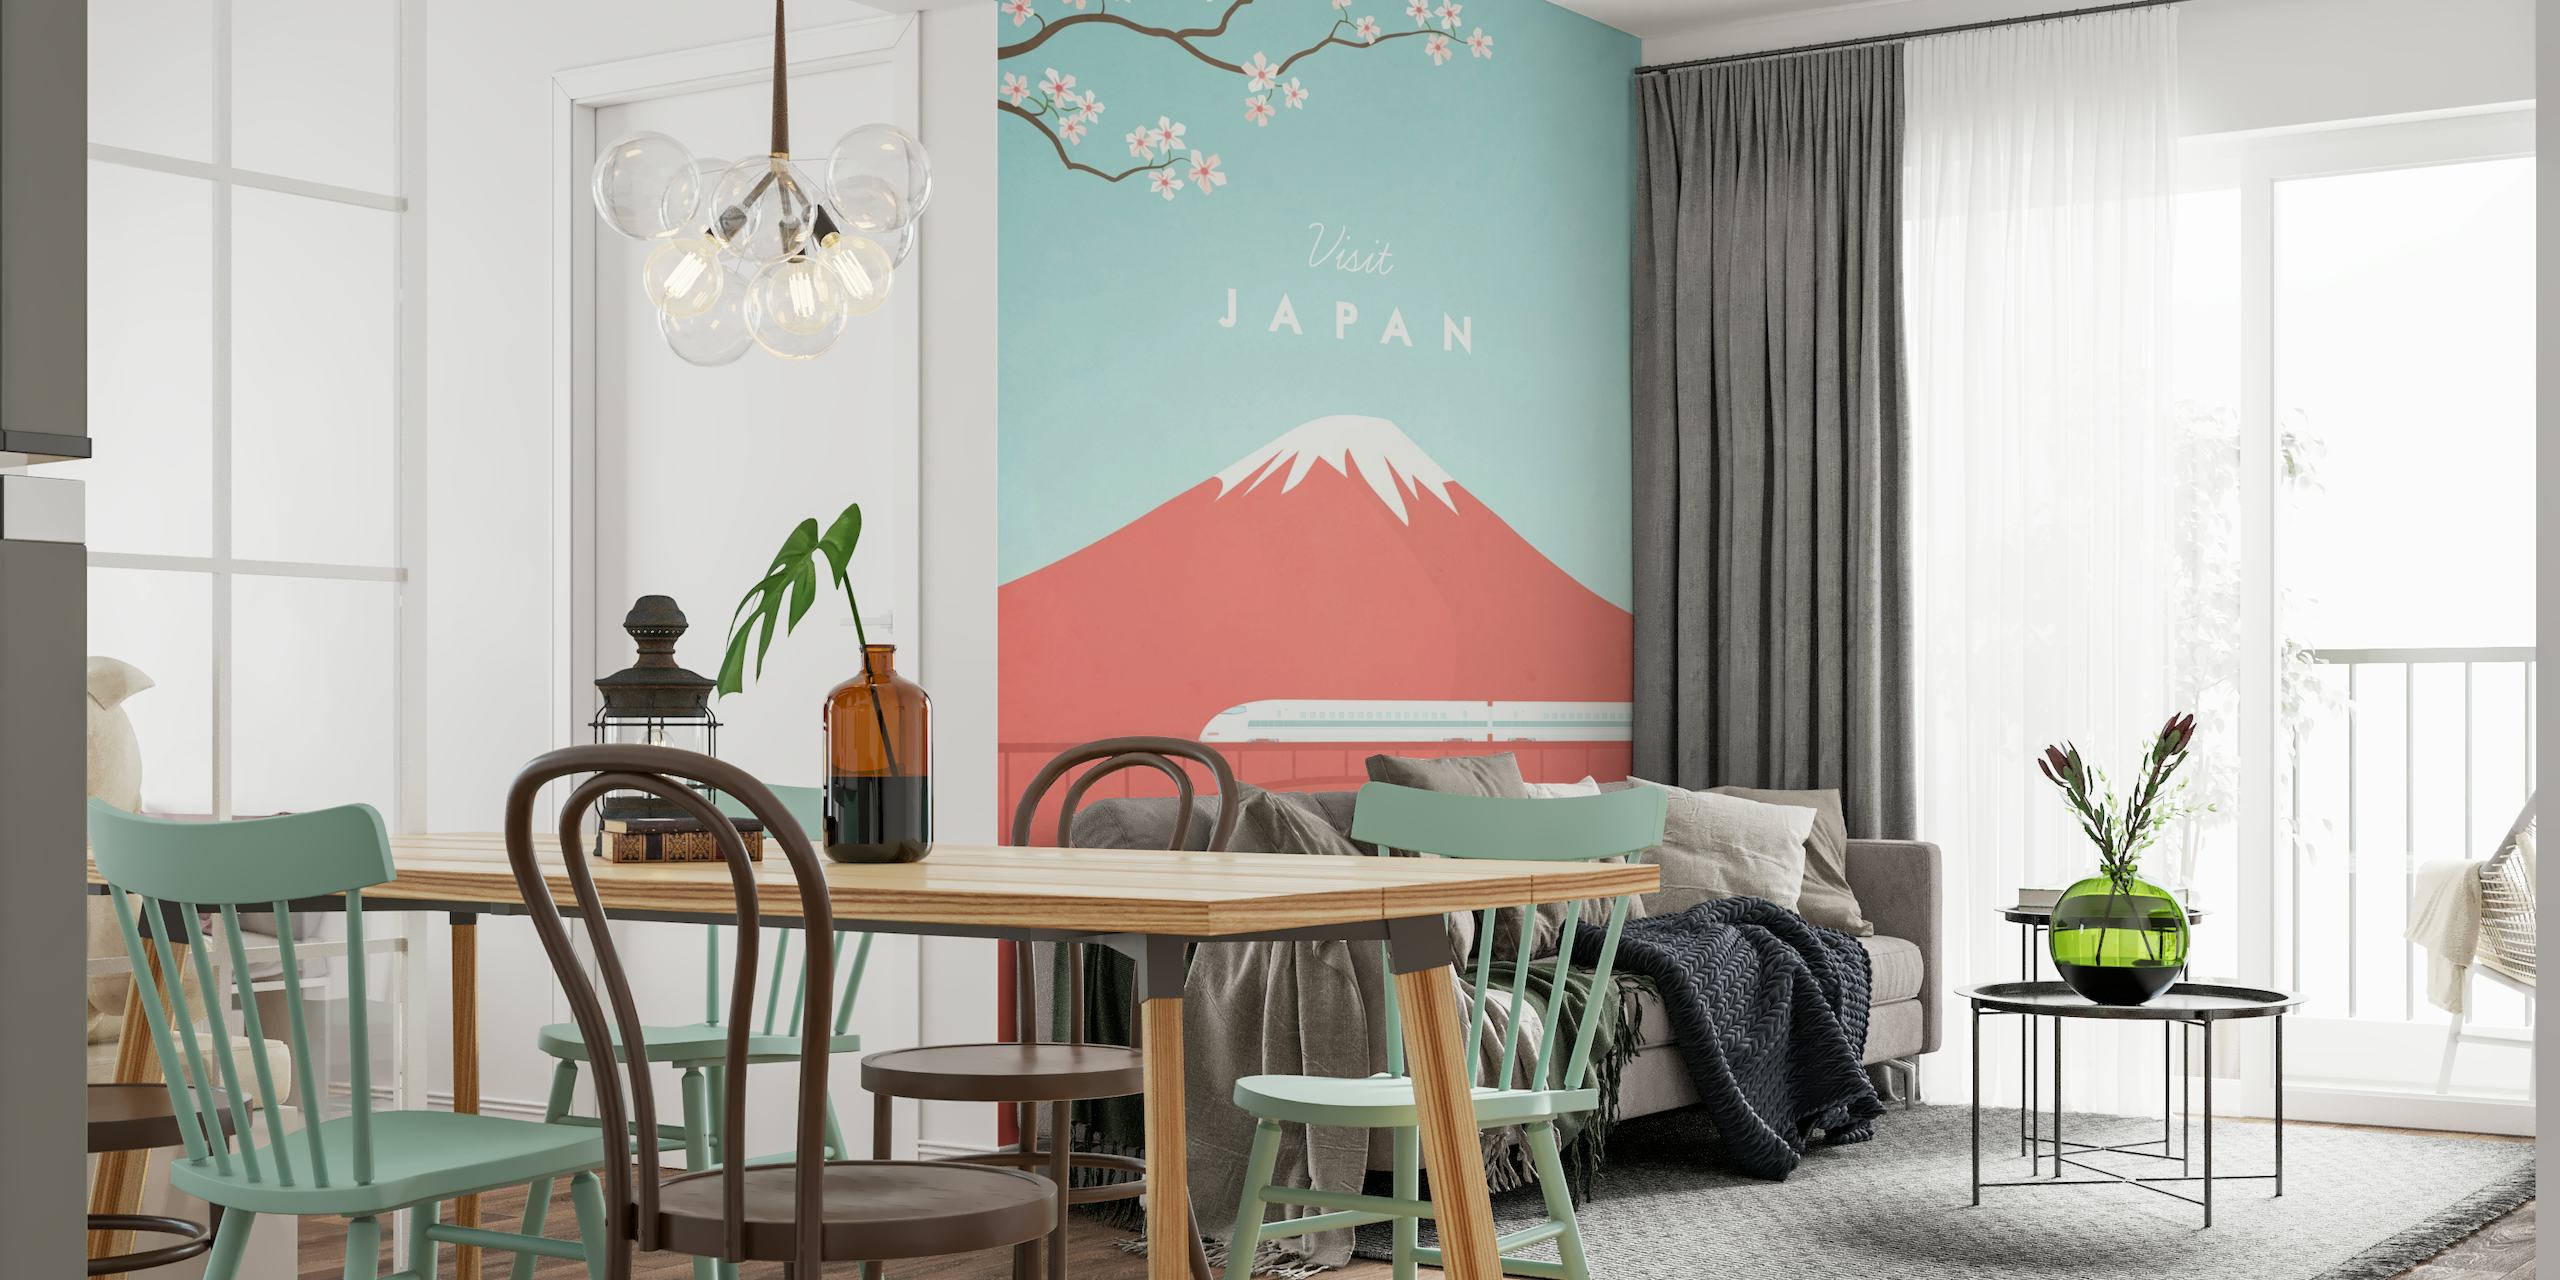 Japan Travel Poster papiers peint